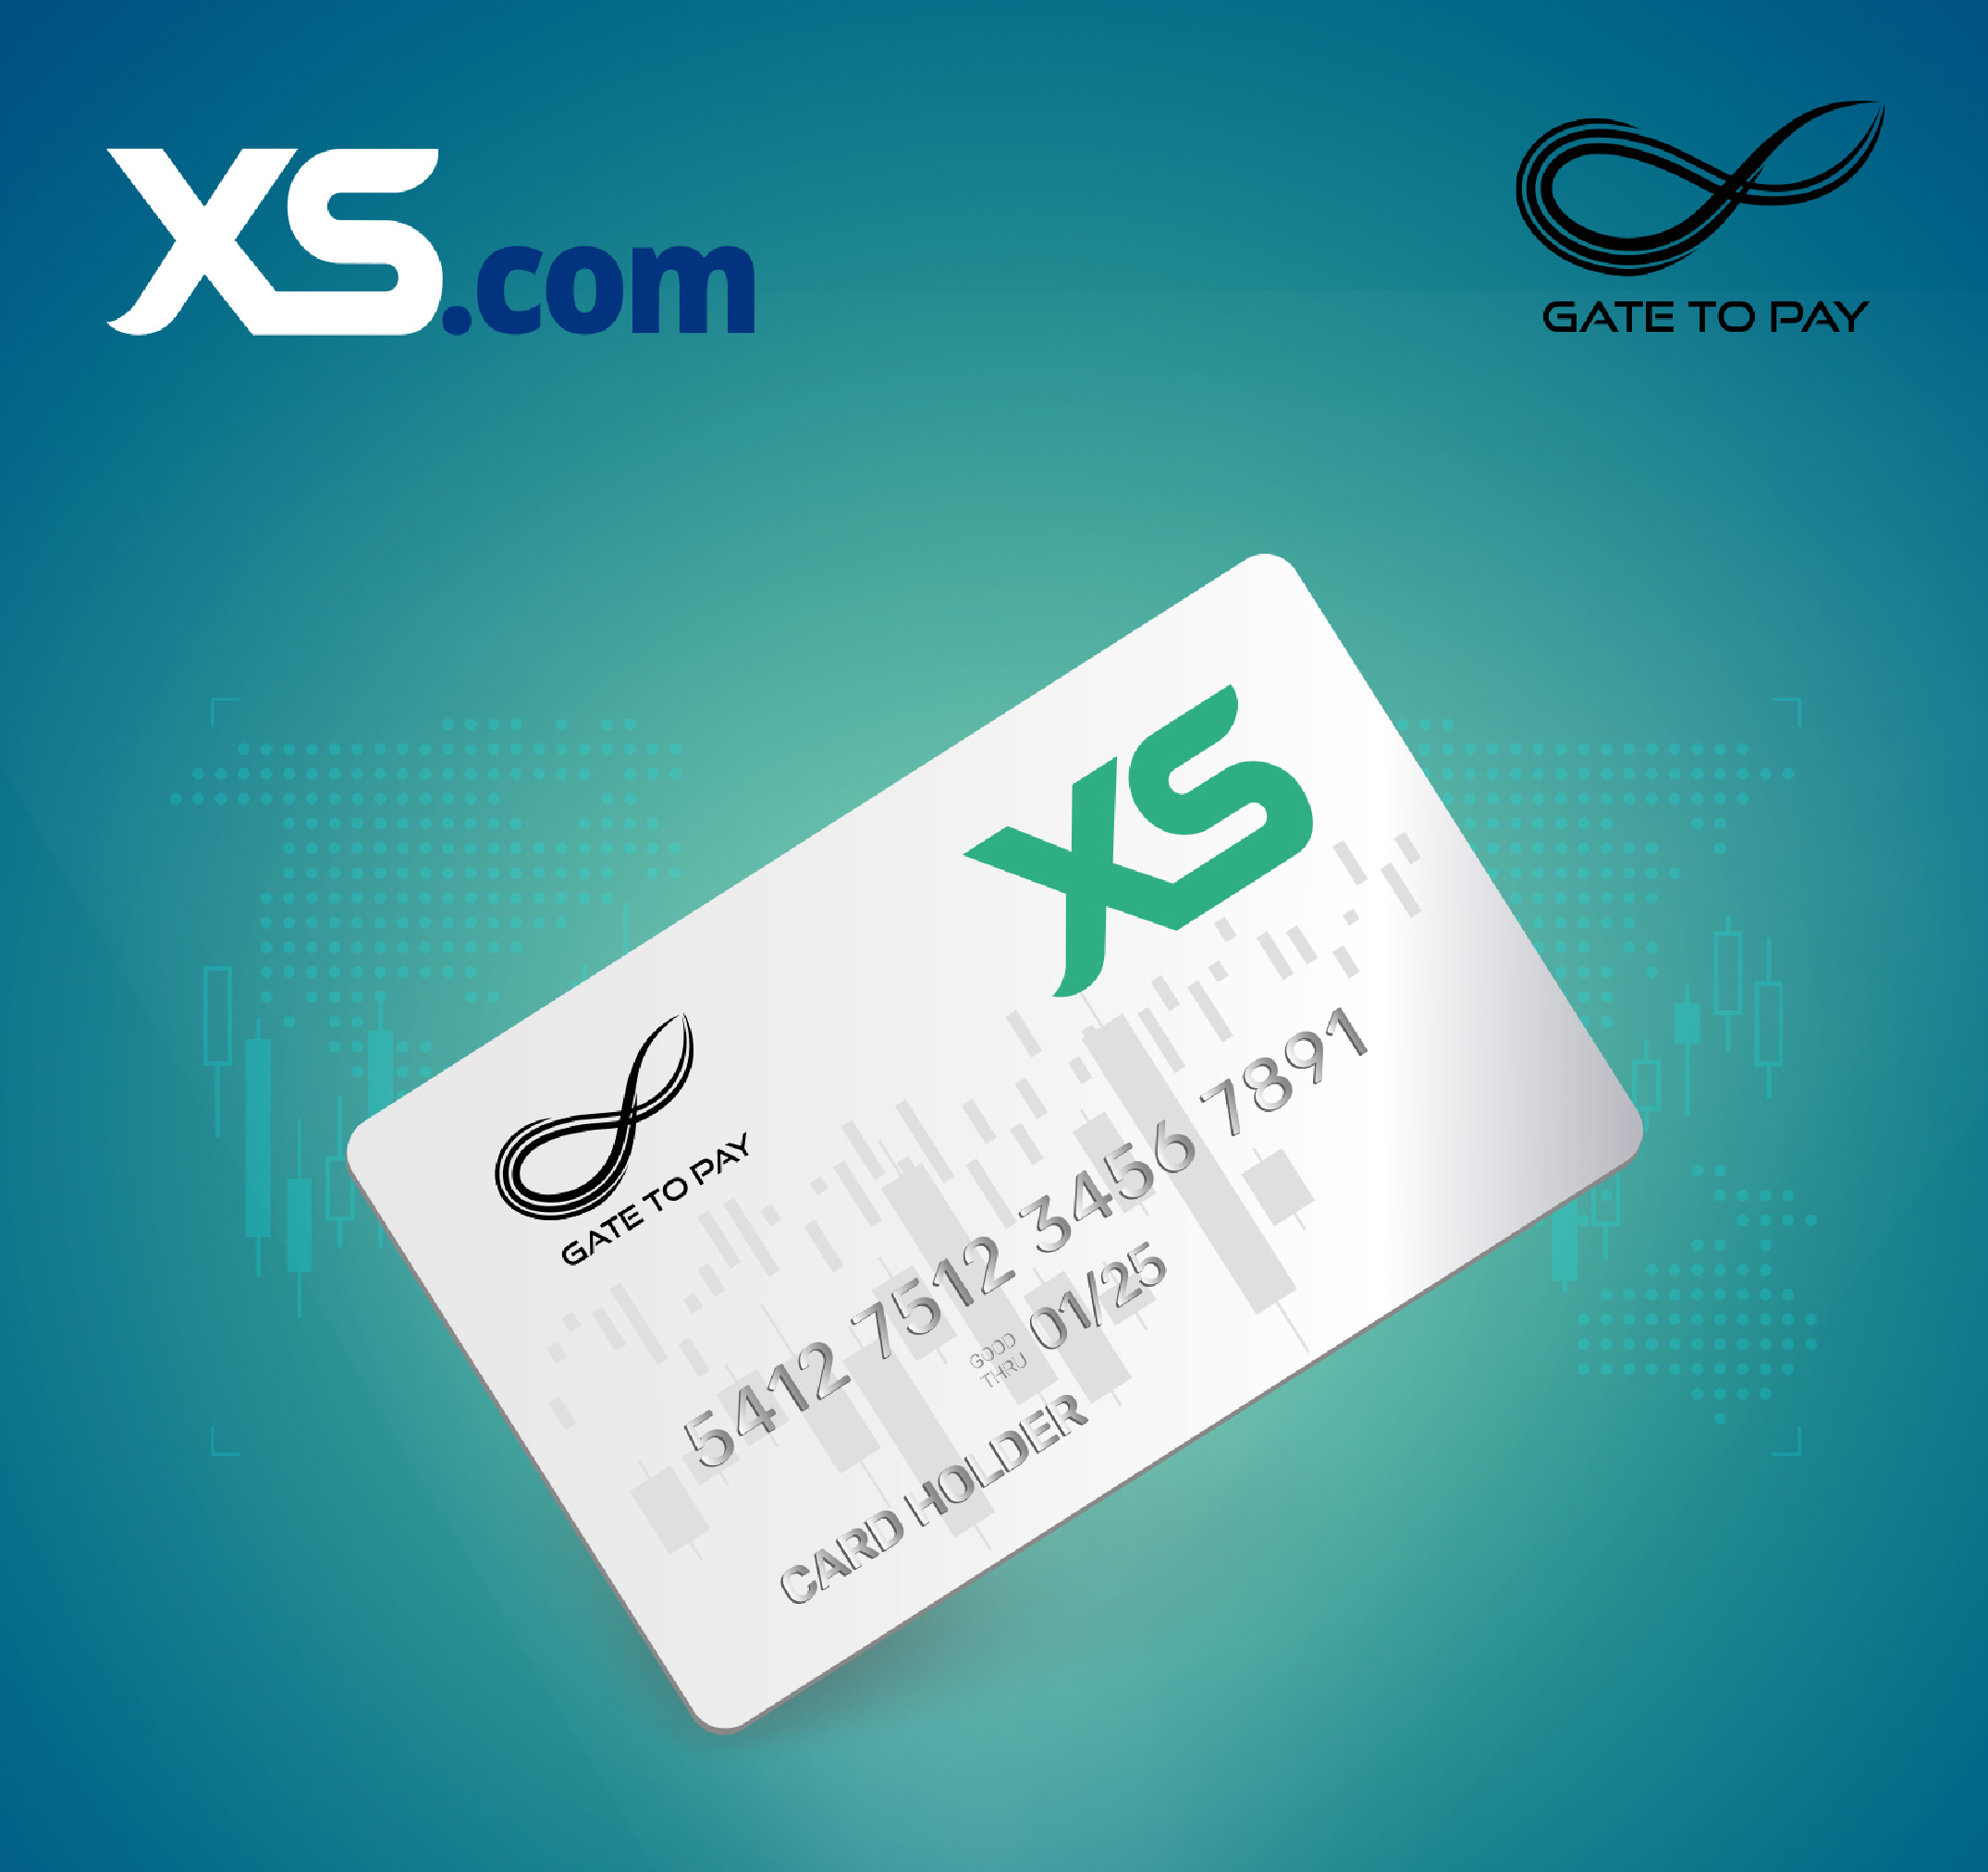 XS.com Giới Thiệu Thẻ Mastercard Trả Trước XS Được Tích Hợp Với Ứng Dụng Di Động “Thẻ XS”